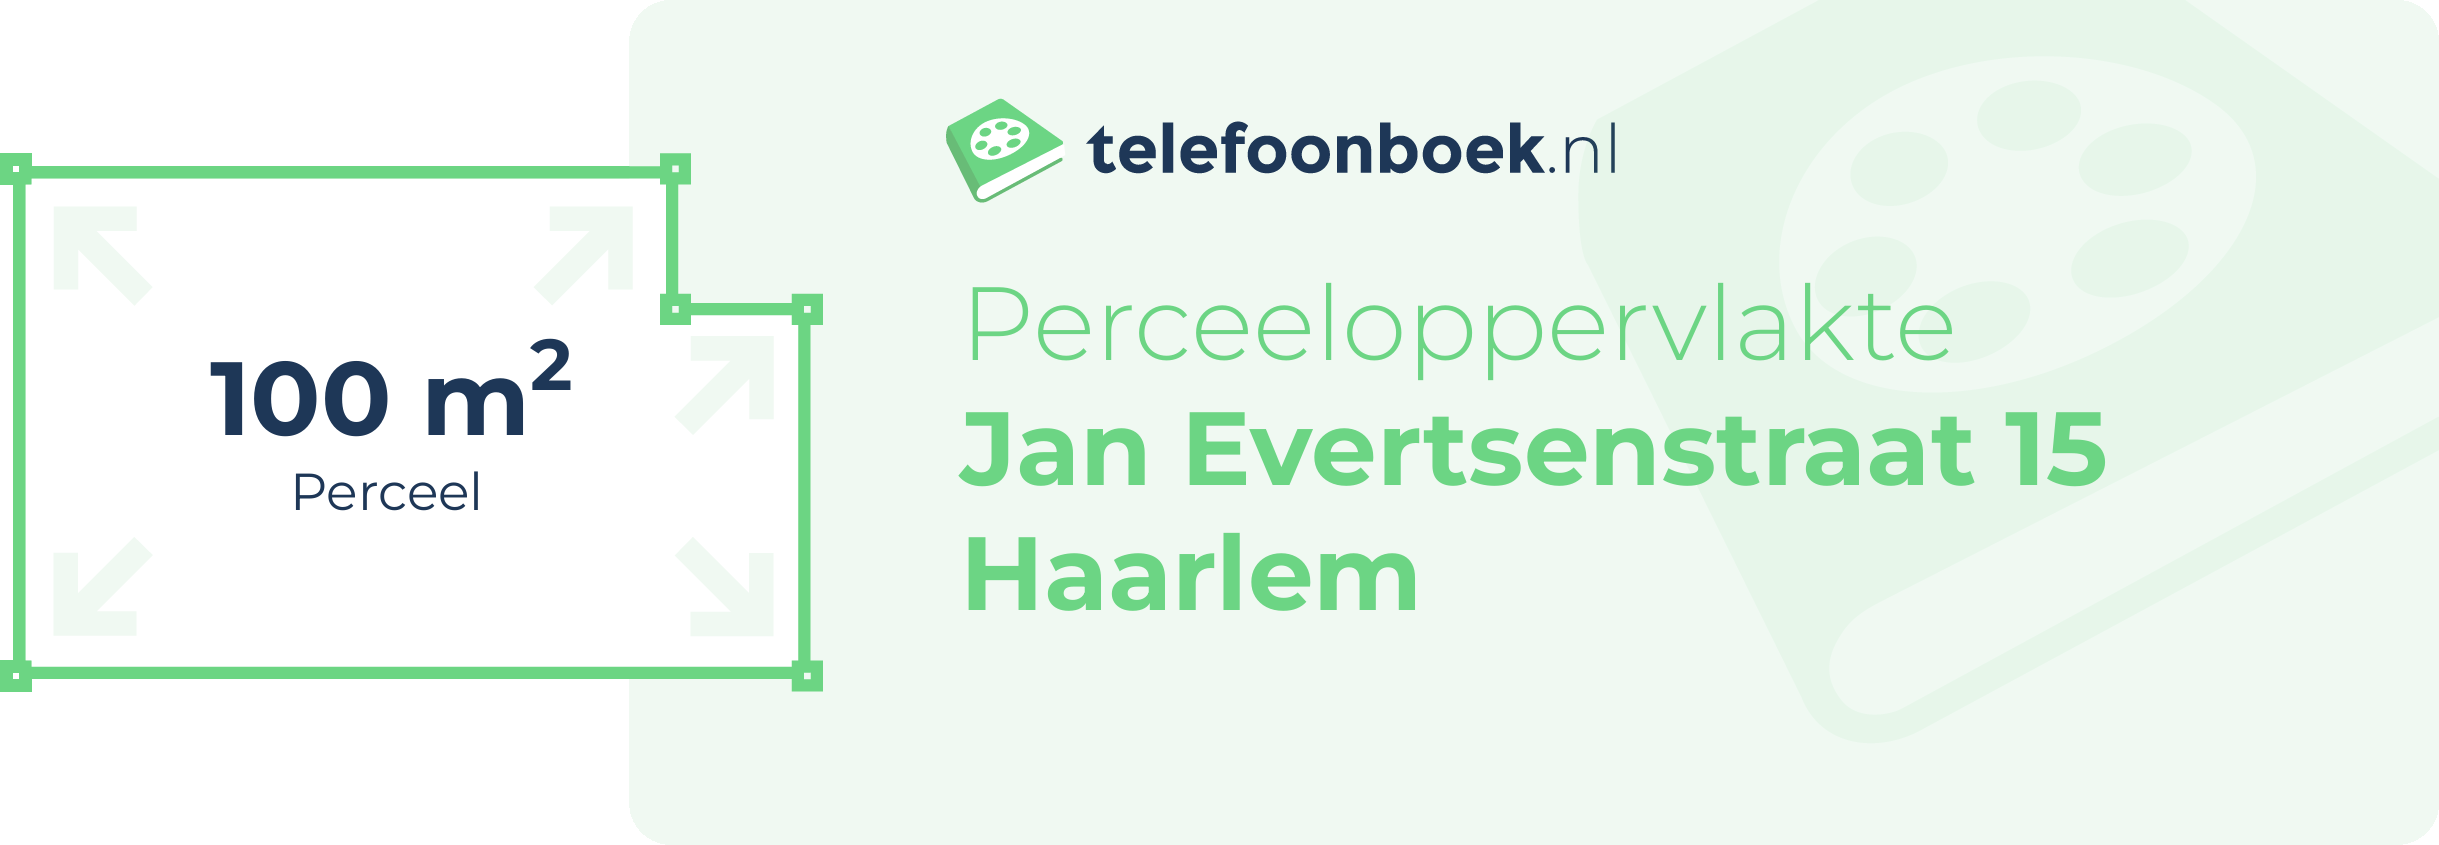 Perceeloppervlakte Jan Evertsenstraat 15 Haarlem